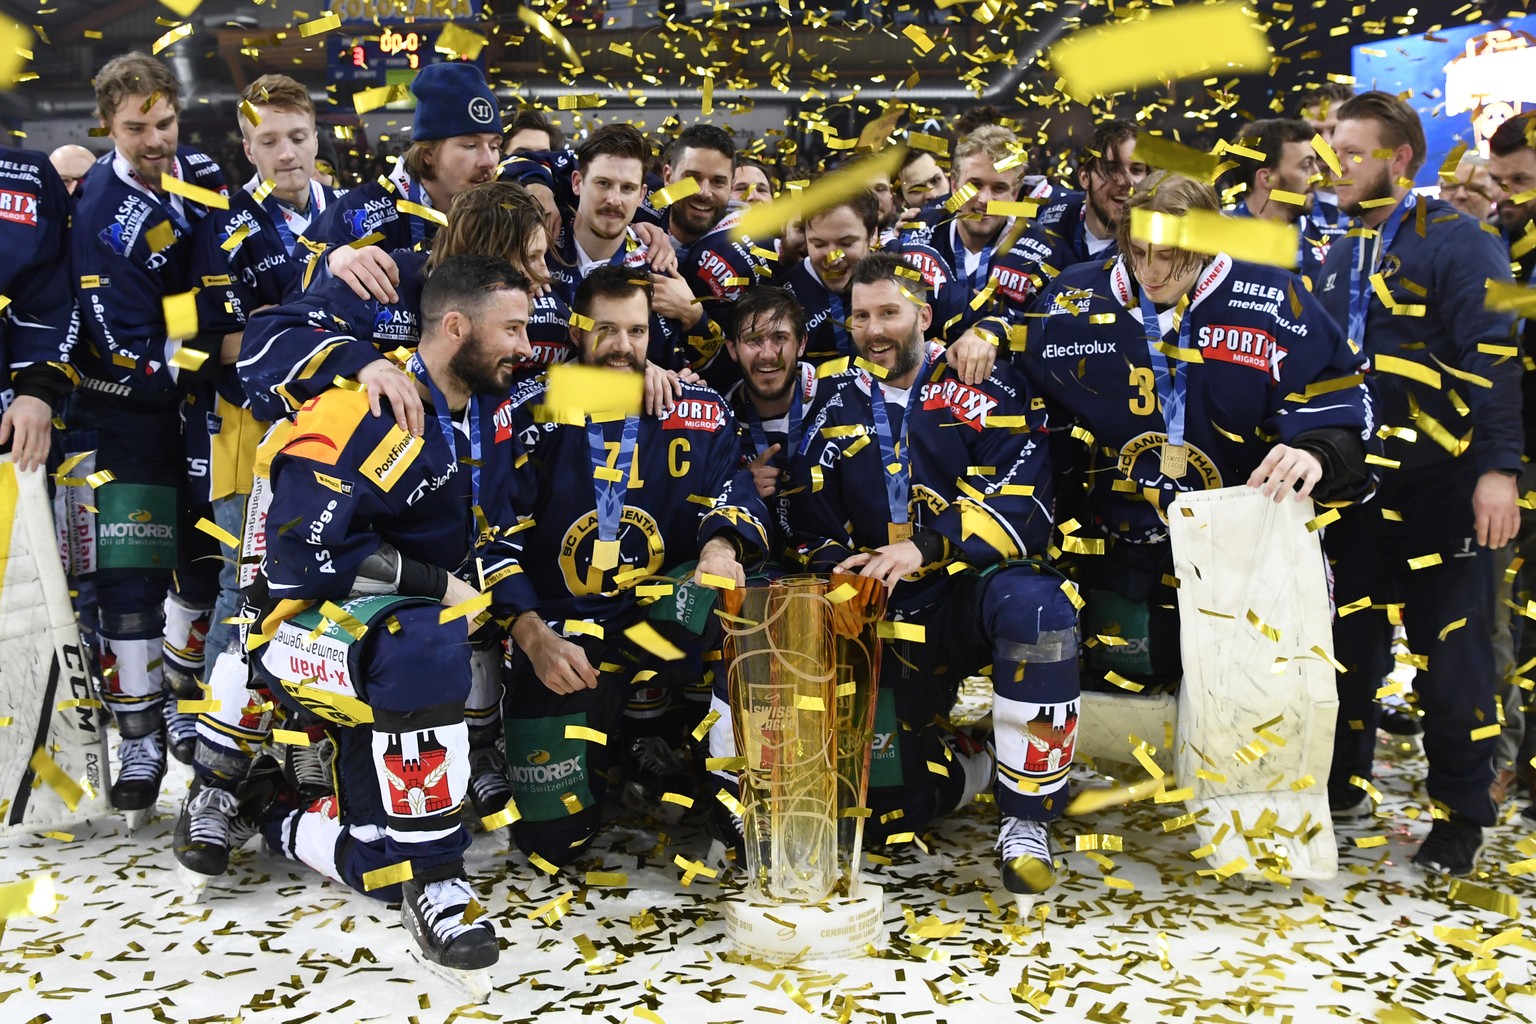 2019 feiert Langenthal den Meistertitel der Swiss League. Ist bald Lichterlöschen?